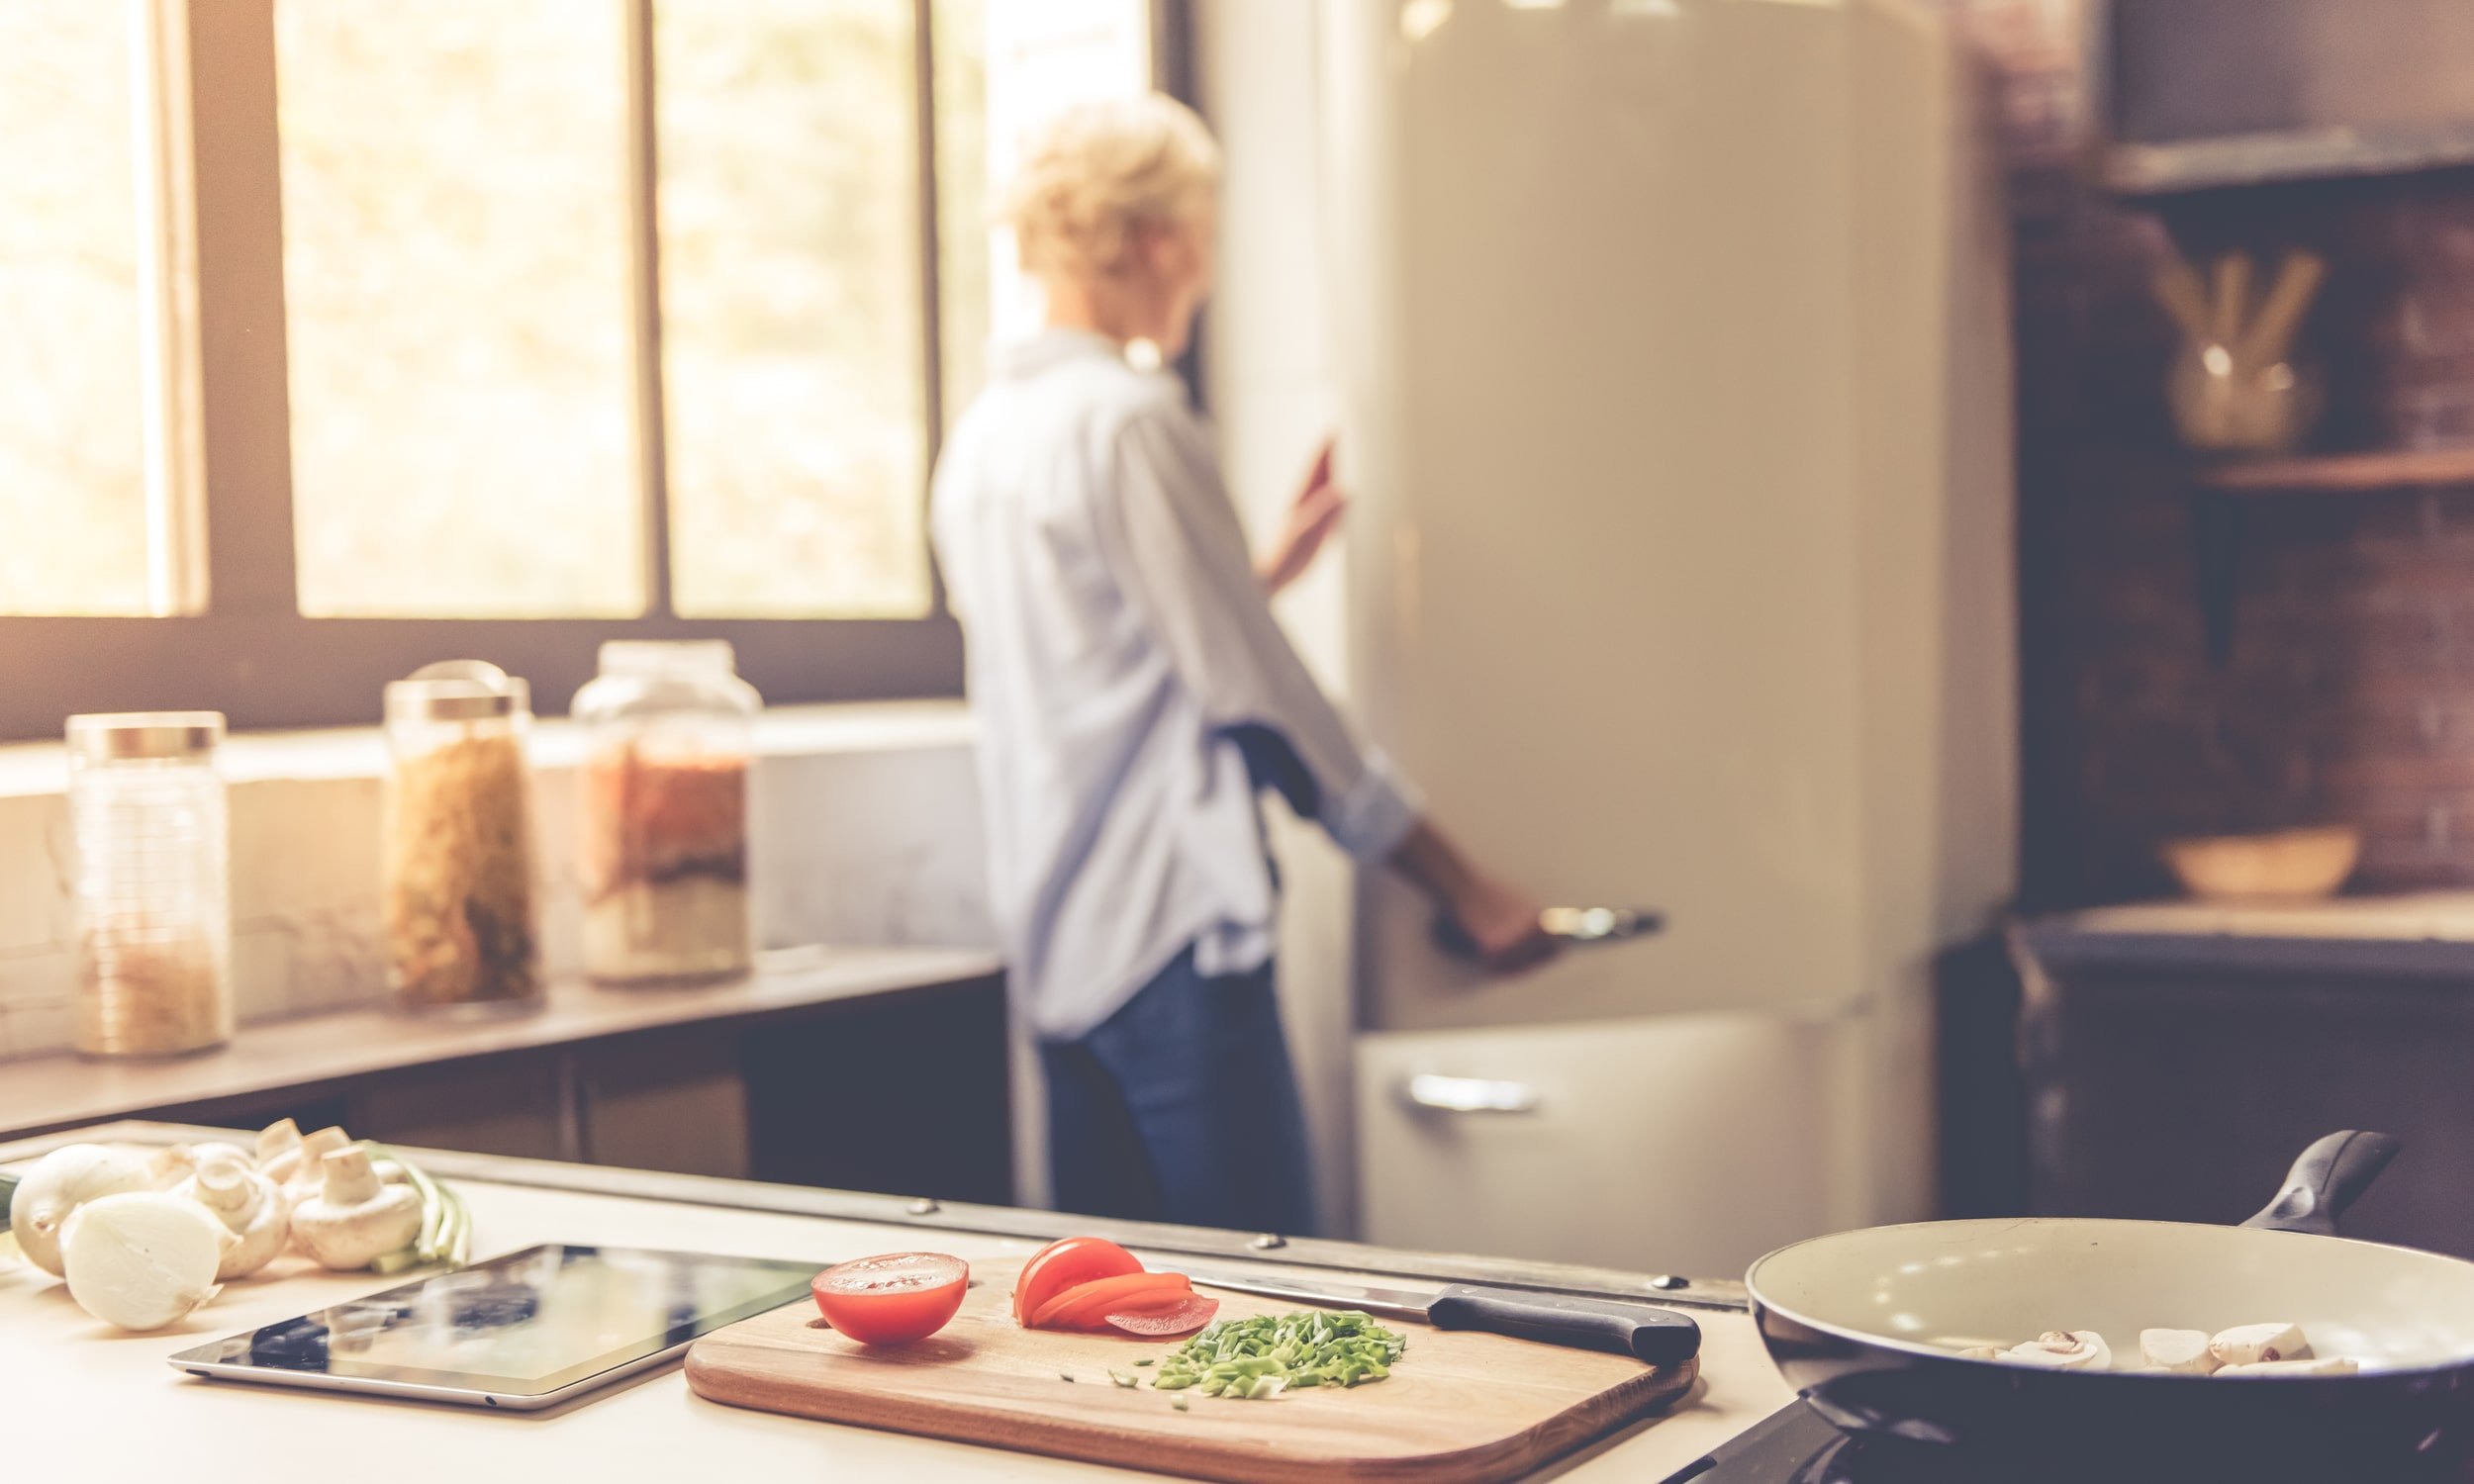 naine avab külmkappi köögis